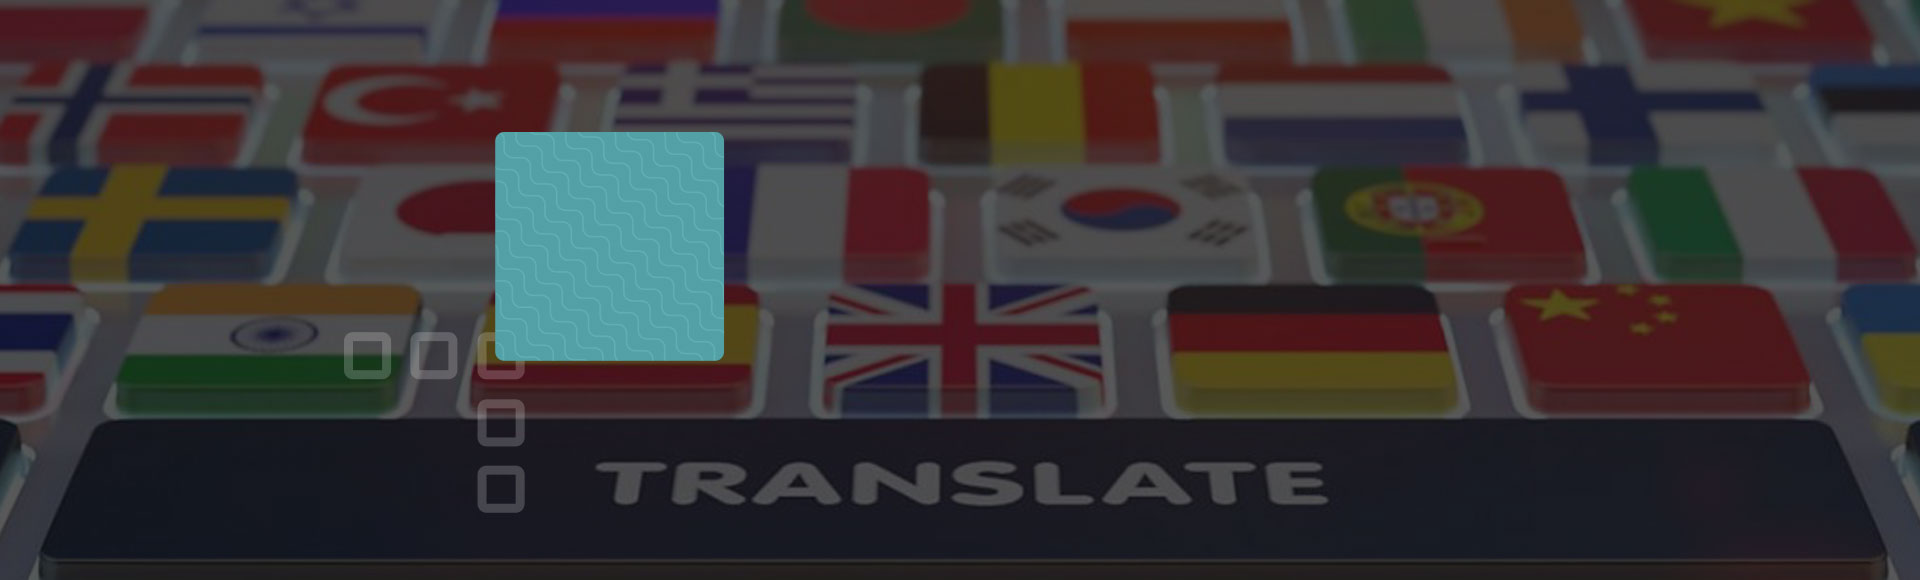 Tipos de tradução: conheça os 5 mais comuns e como escolher a